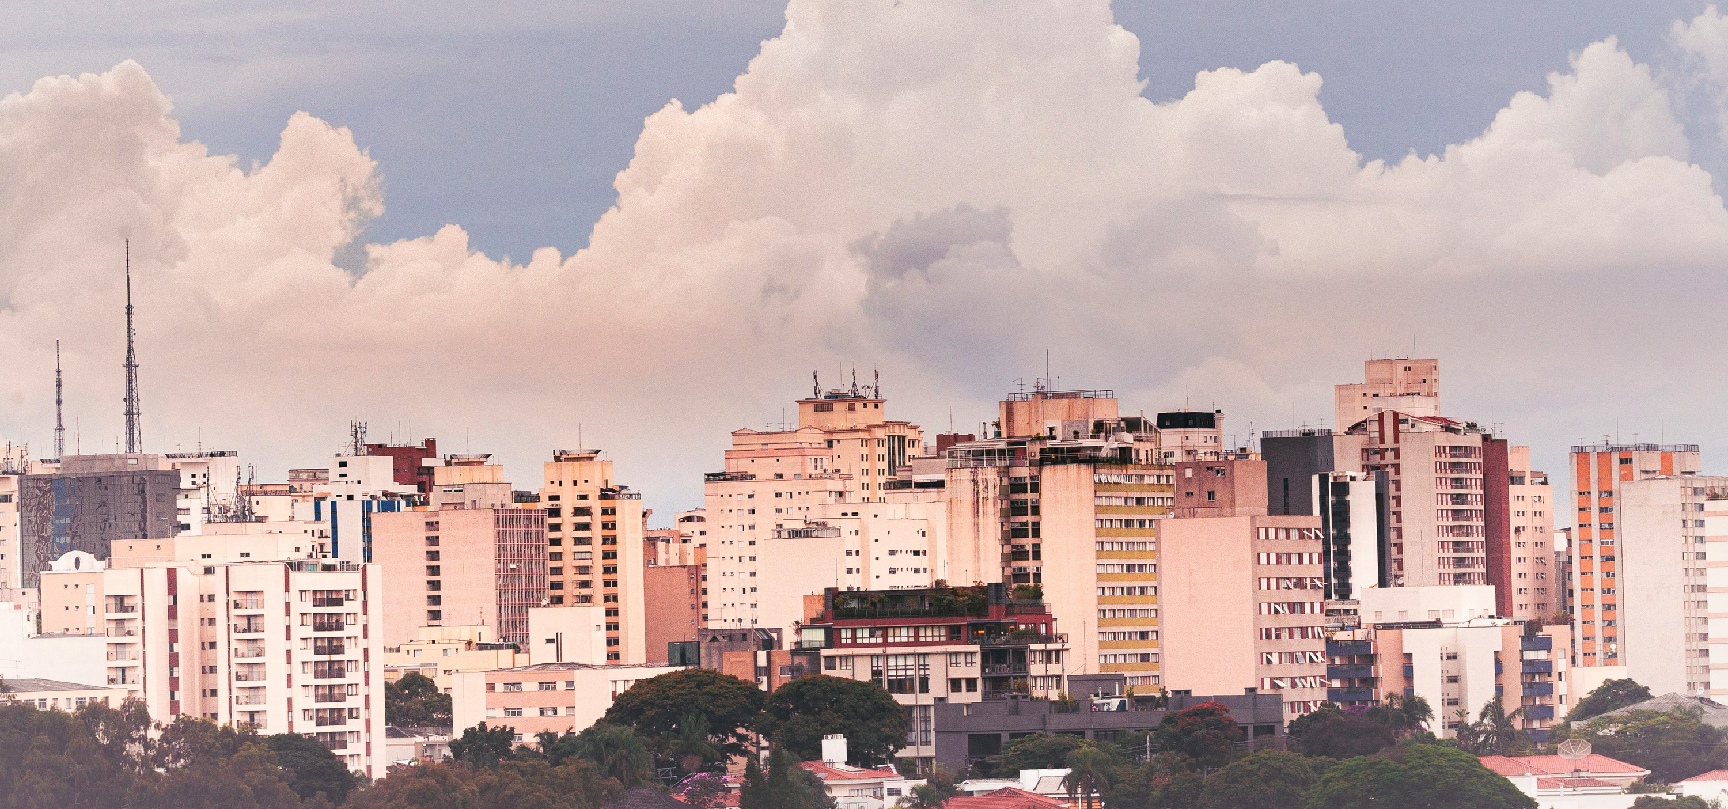 Aluguéis residenciais no Brasil sobem 3,75% no primeiro trimestre, segundo índice FipeZap